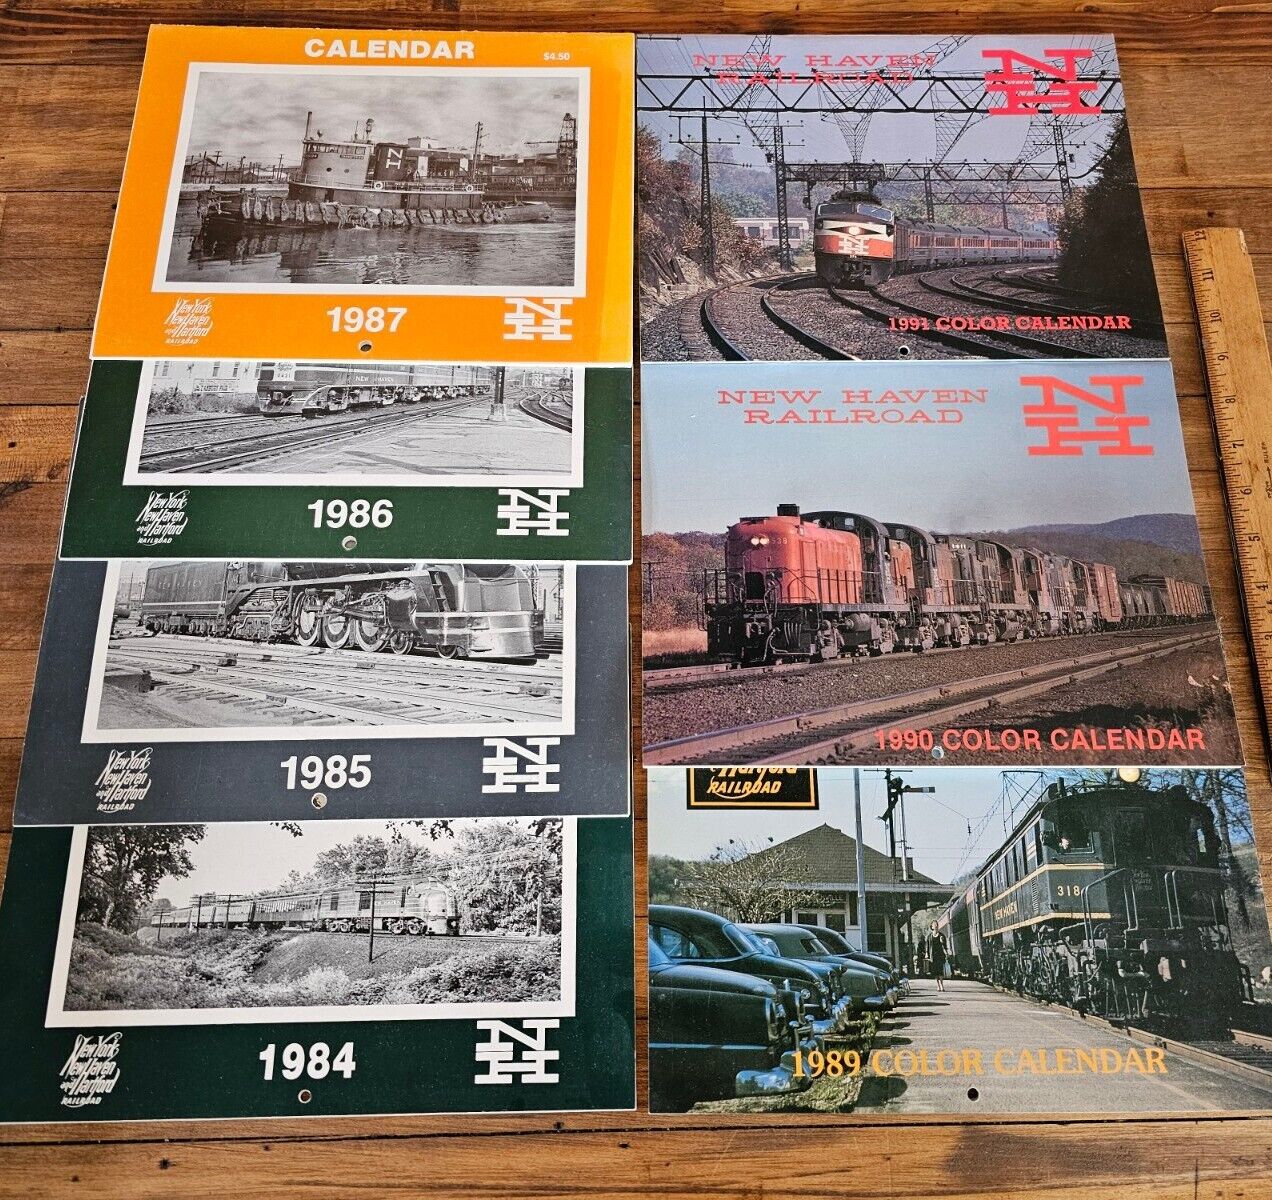 NYNH&H New York New Haven Hartford Railroad CALENDARS 1987-1991 Rare PHOTOS